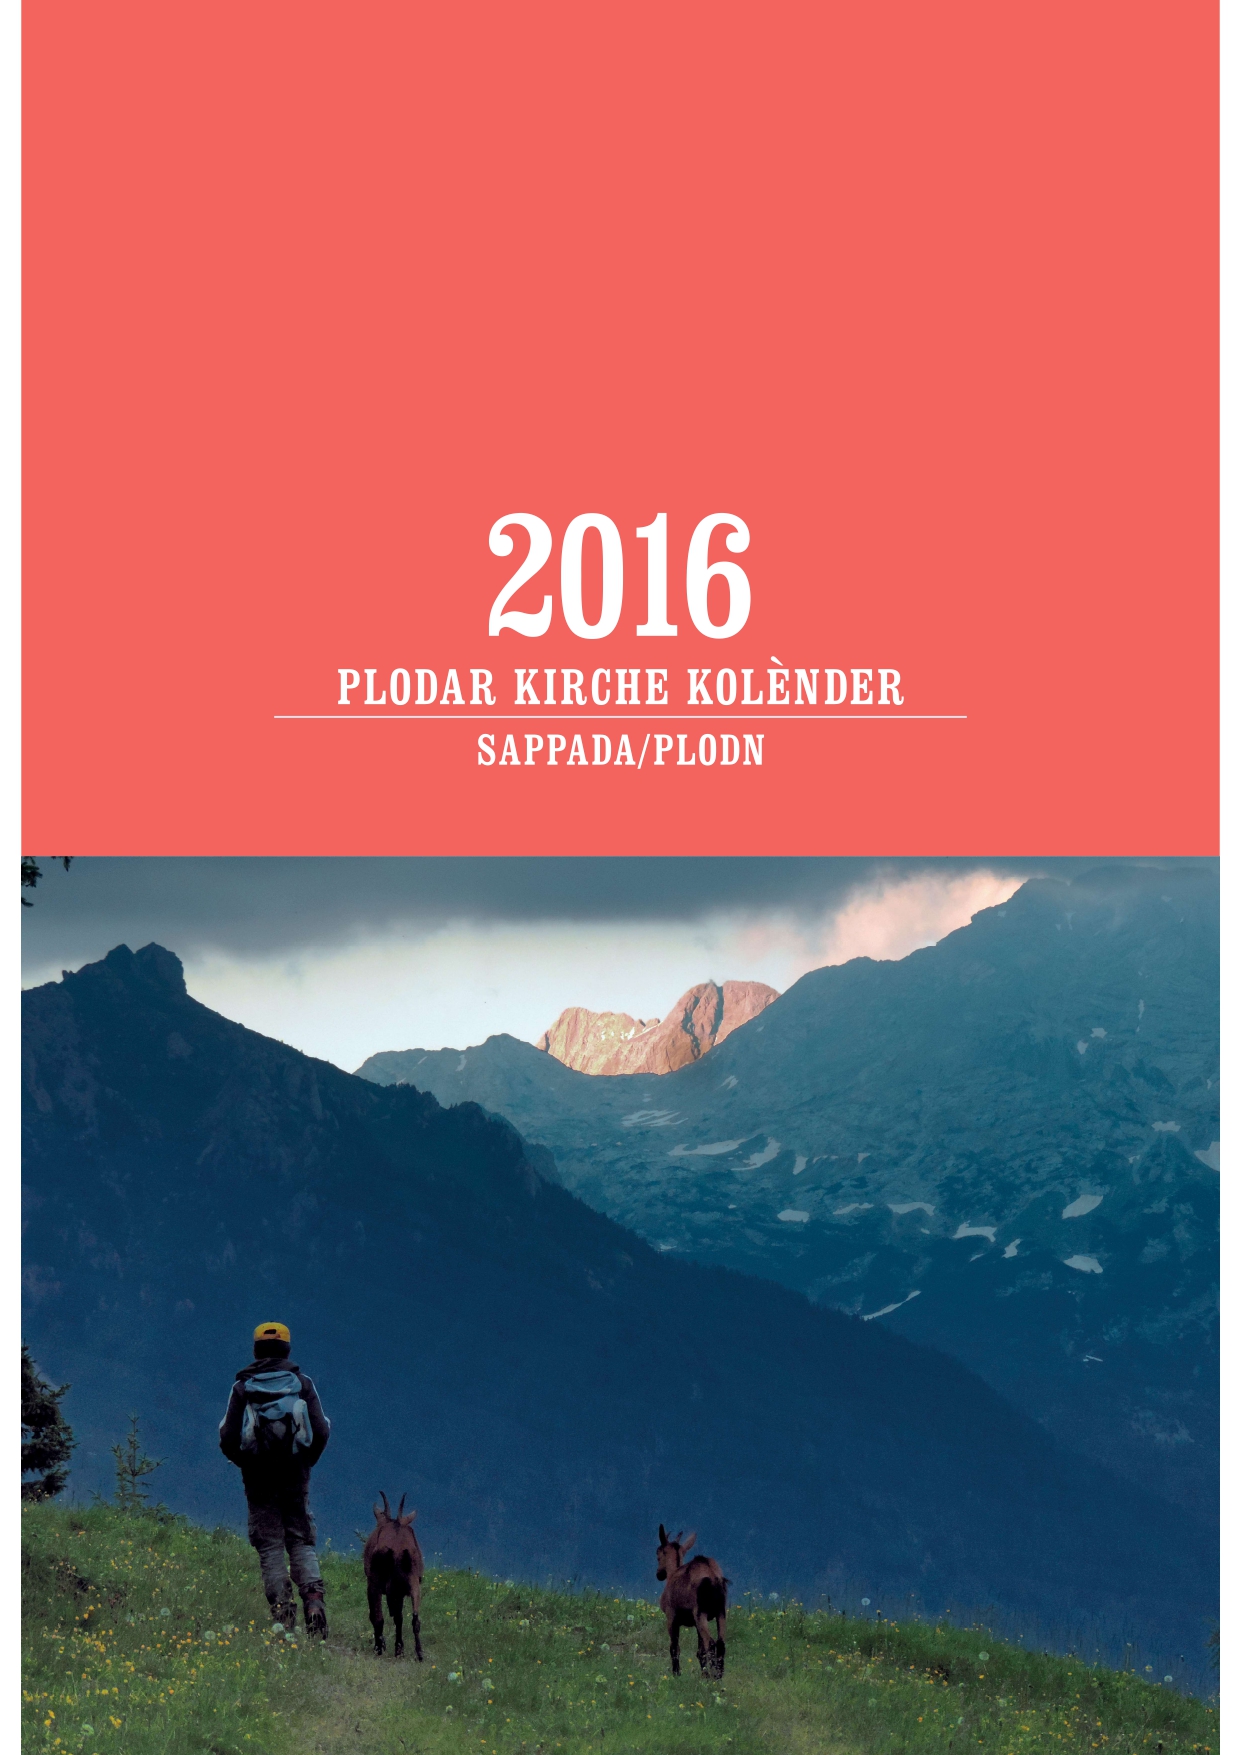 Plodar-kirche-kolender-2016